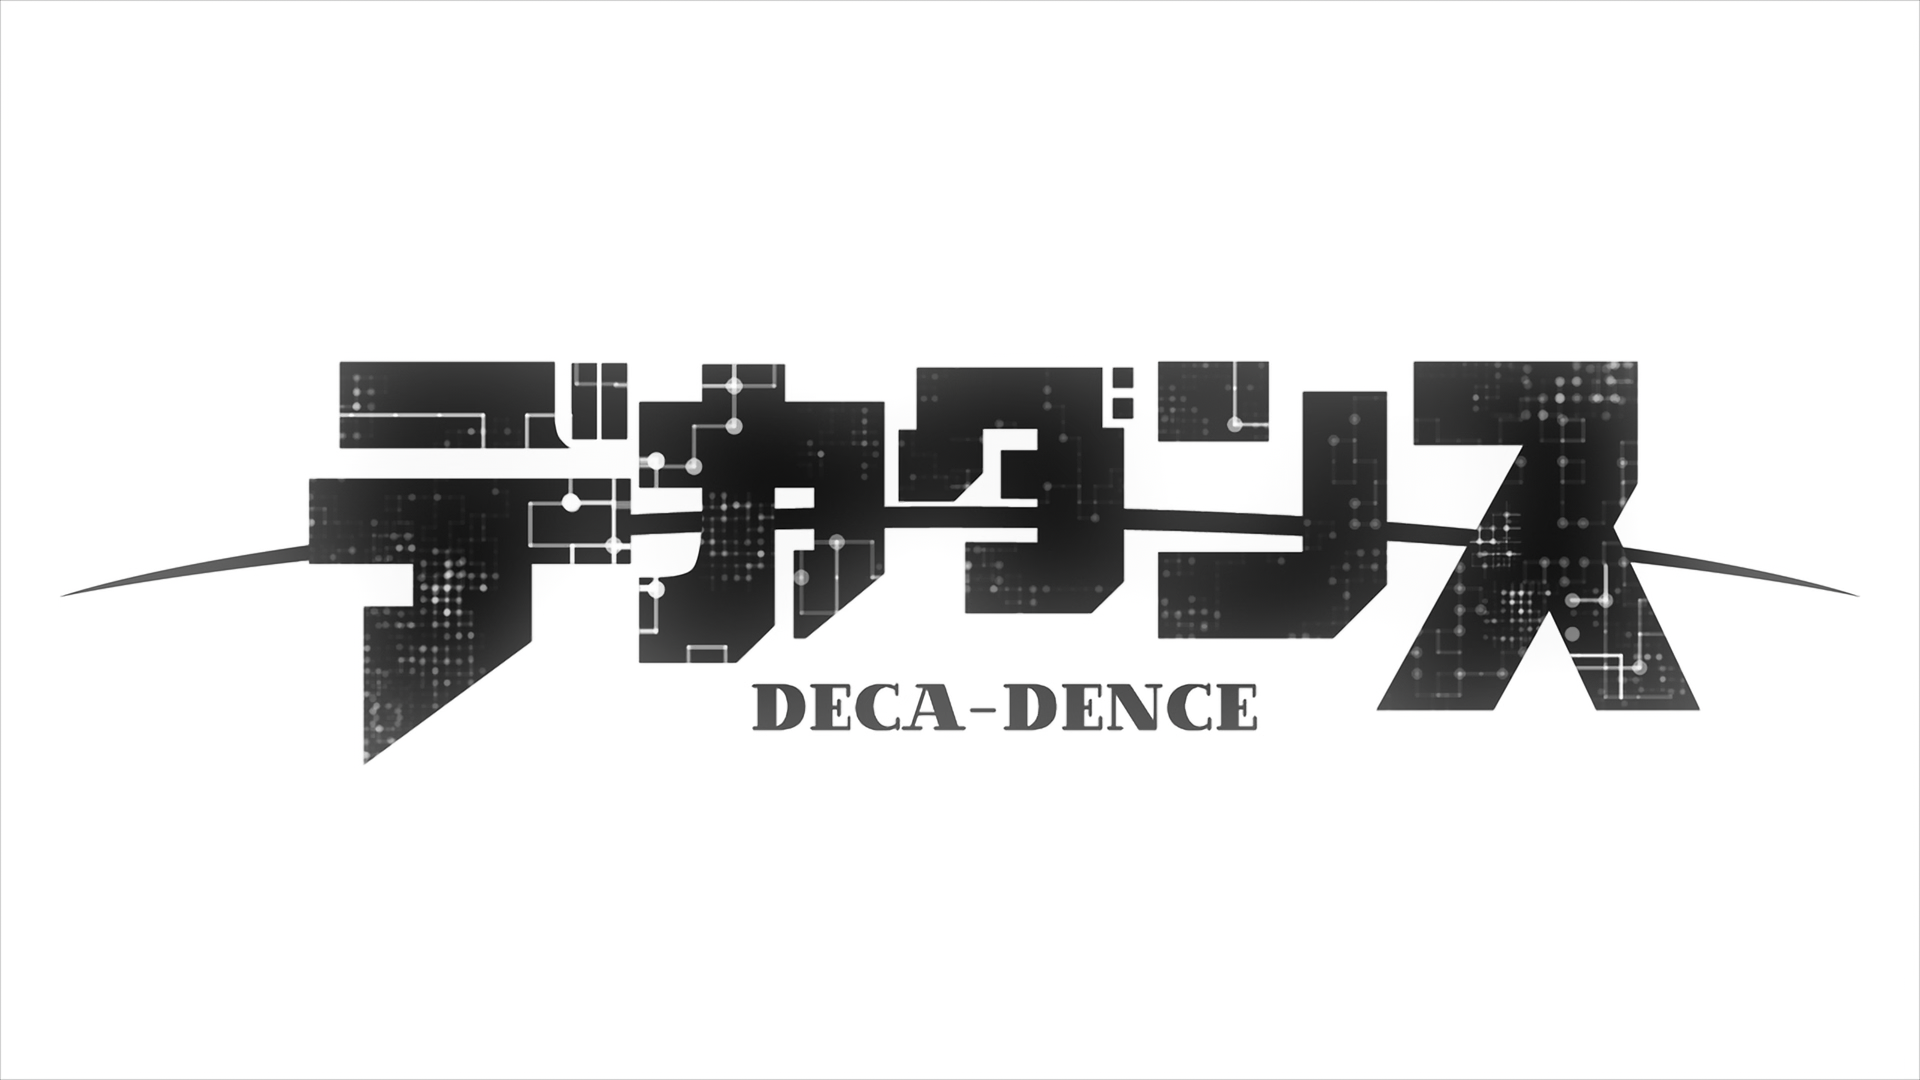 [豌豆字幕组&风之圣殿&LoliHouse] 没落要塞 / DECA-DENCE / デカダンス [BDRip 1080p HEVC-10bit FLAC]插图icecomic动漫-云之彼端,约定的地方(´･ᴗ･`)2